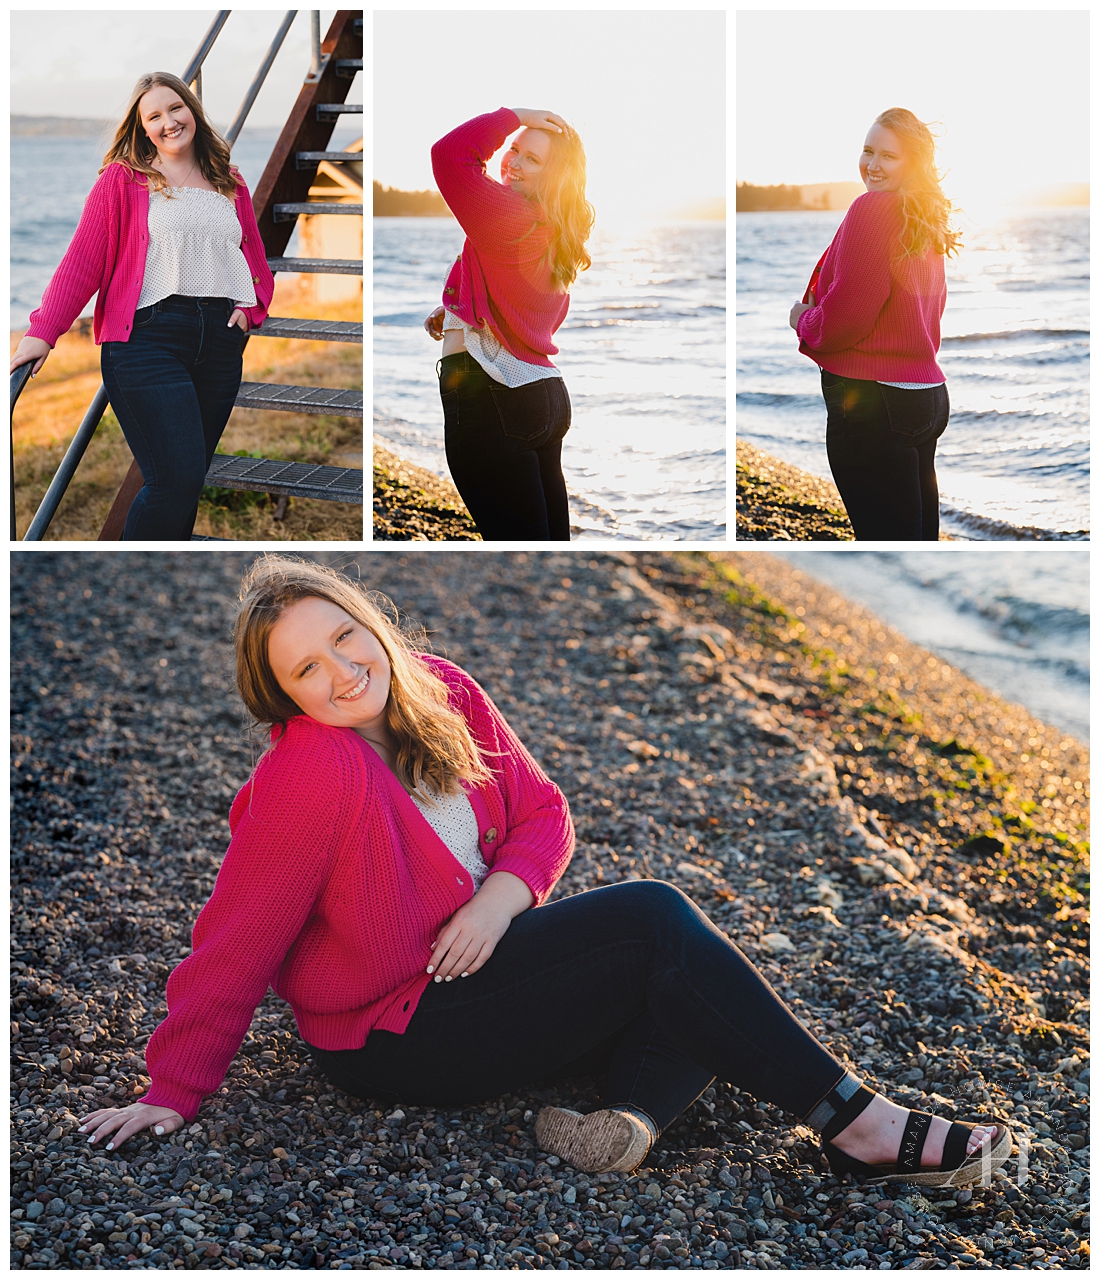 Sunny PNW Senior Portraits on the Beach | Saltars Beach | Photographed by the Best Tacoma, Washington Senior Photographer Amanda Howse Photography